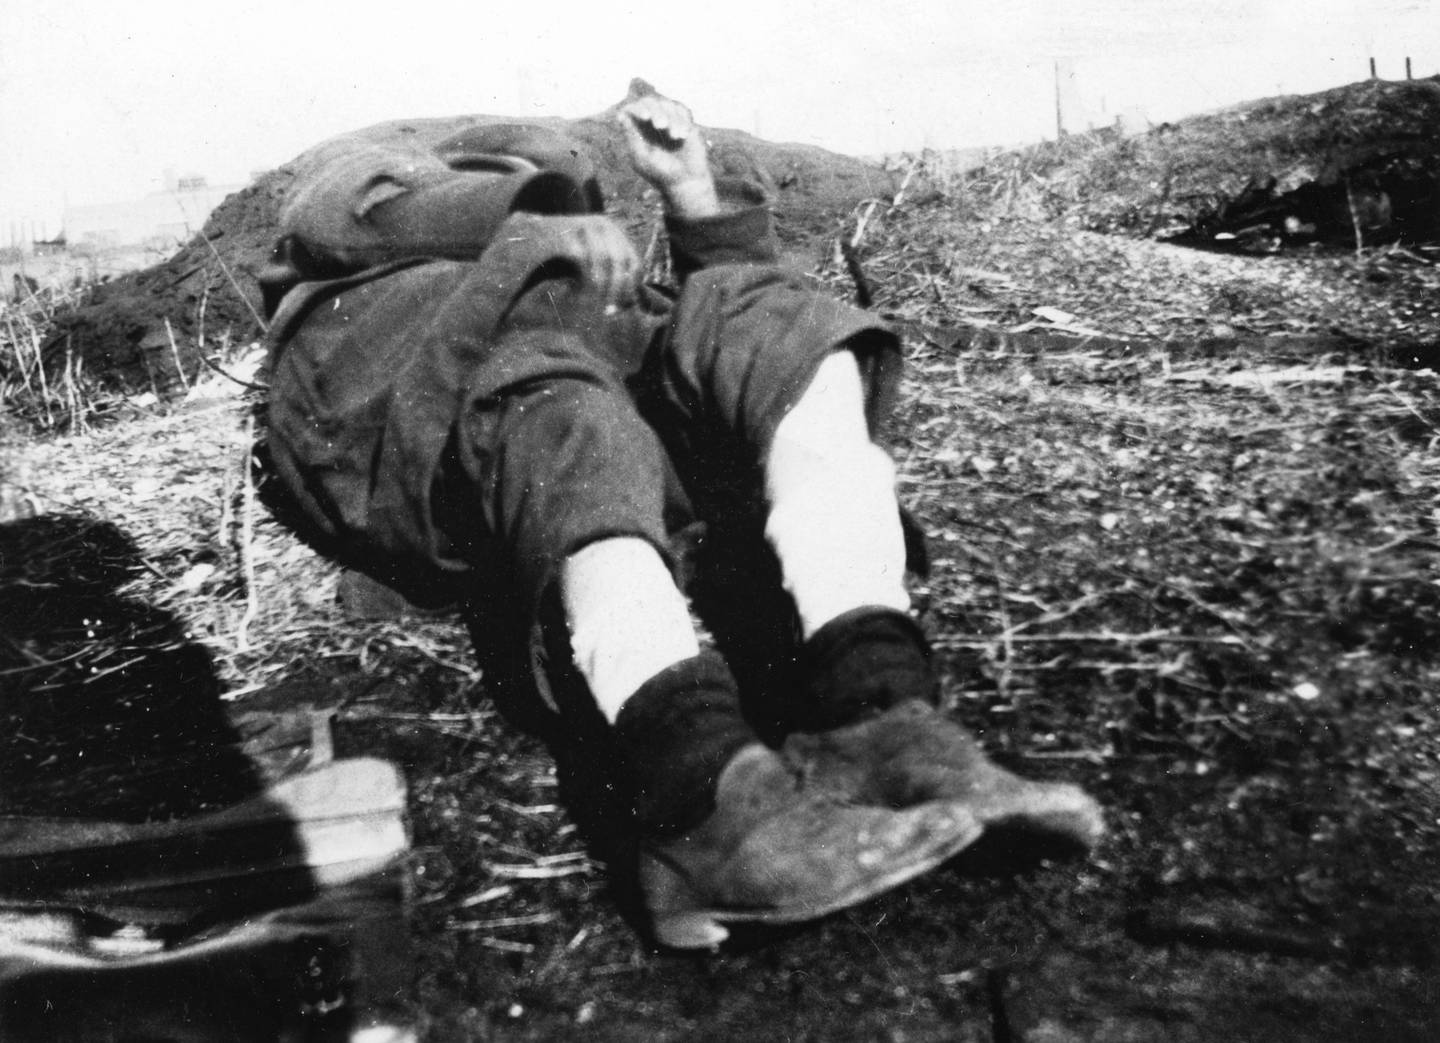 Gutten på bildet, som ligger på bakken,  ble brakt til sykehus i 1929 etter å ha oppholdt seg i Ørkenen Sur lenge. Foto: Søren Hesby, Blå Kors/Oslo byarkiv